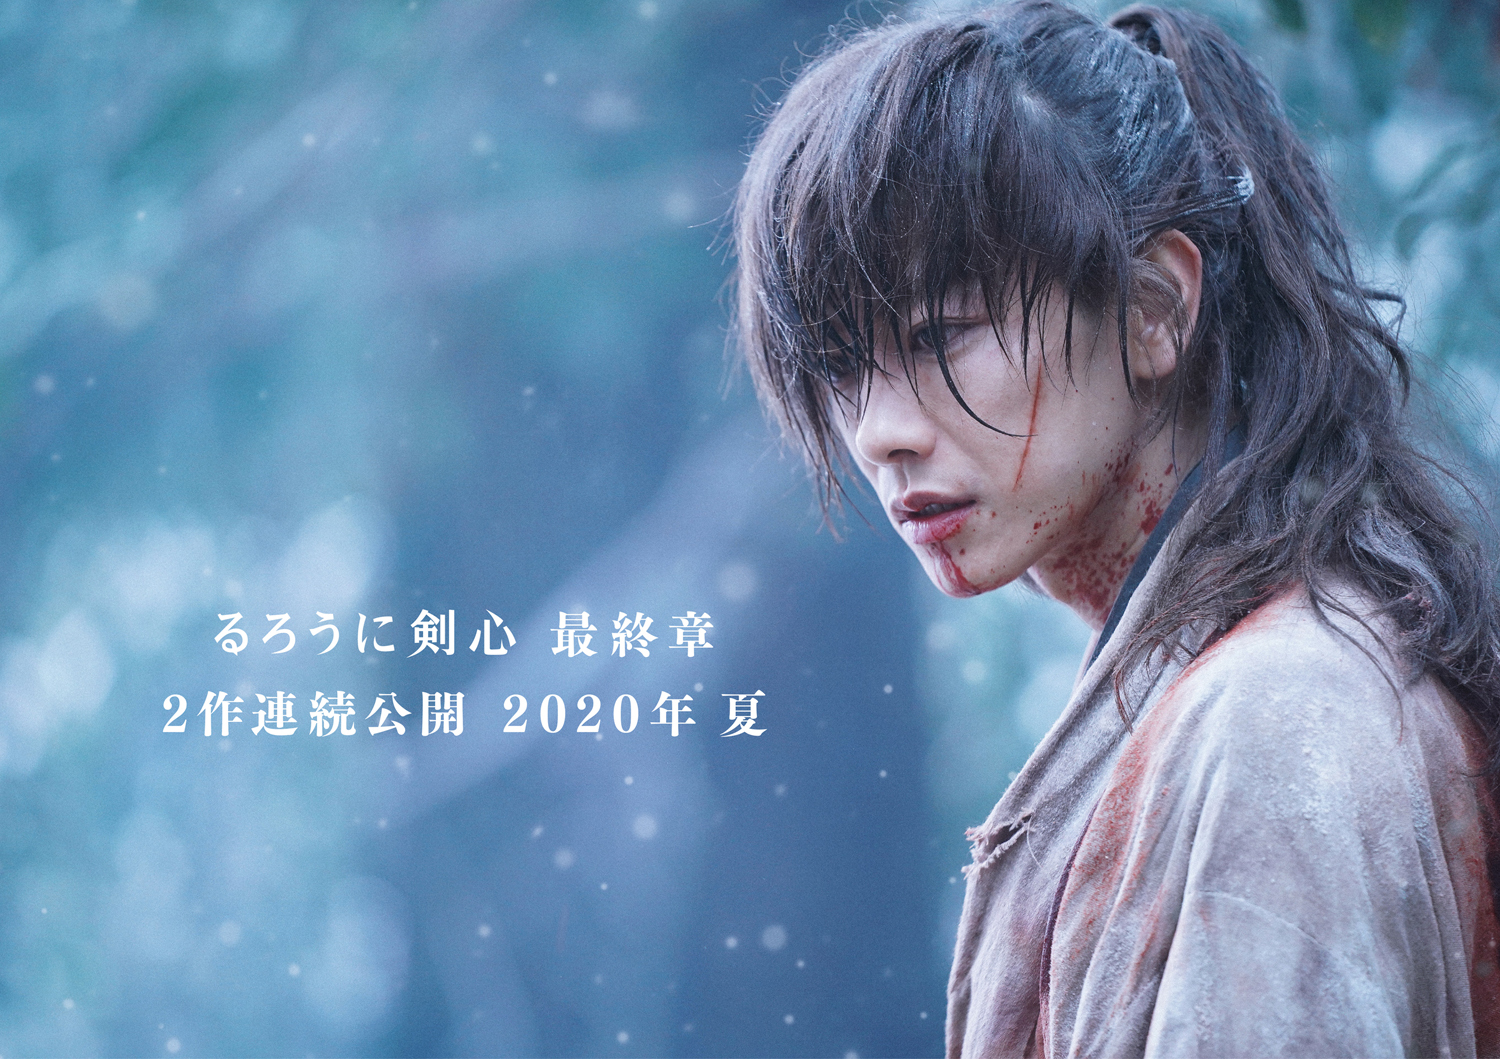 佐藤健主演の実写映画 るろうに剣心 最終章が2020年夏に2作連続公開